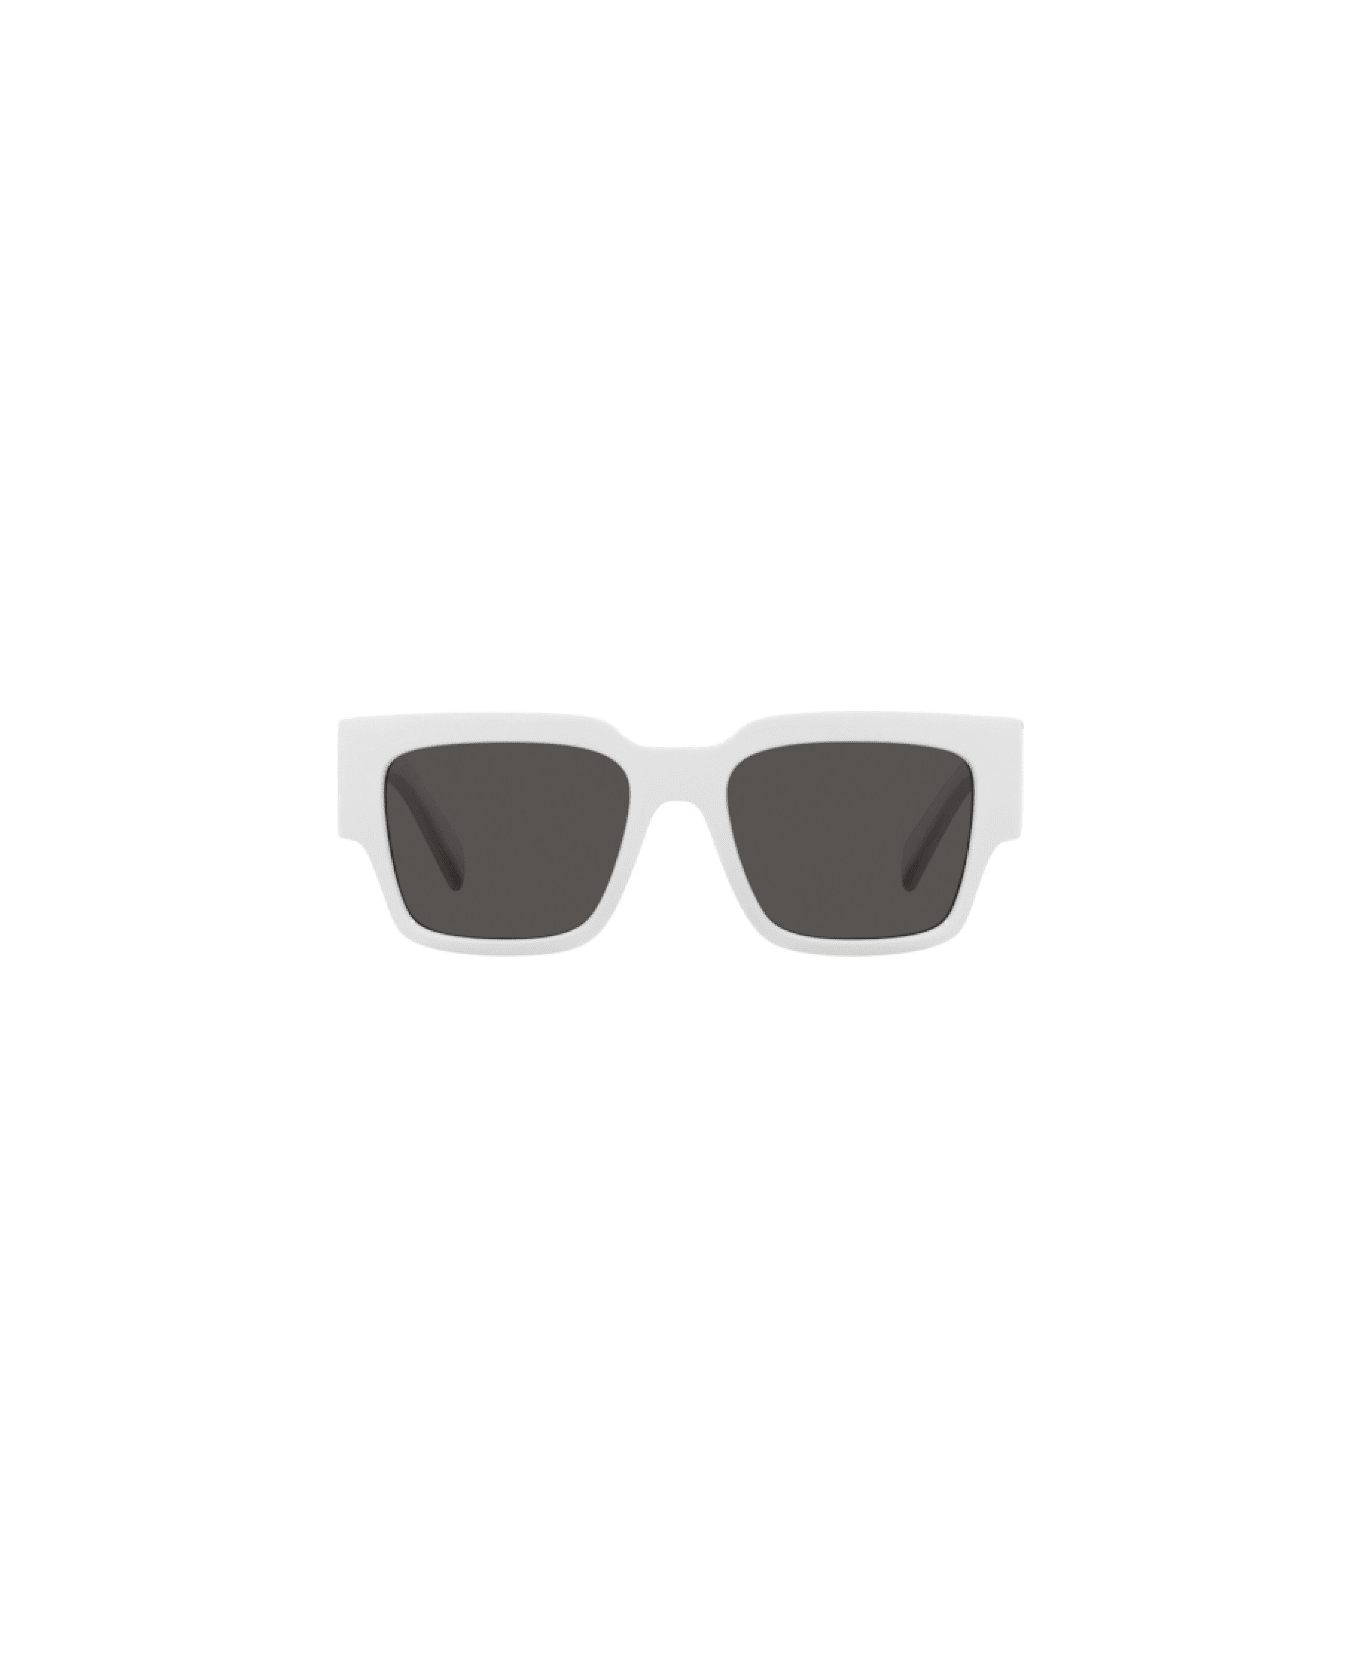 Bb0194s Gold Sunglasses Eyewear DG6184s Sunglasses - Nero